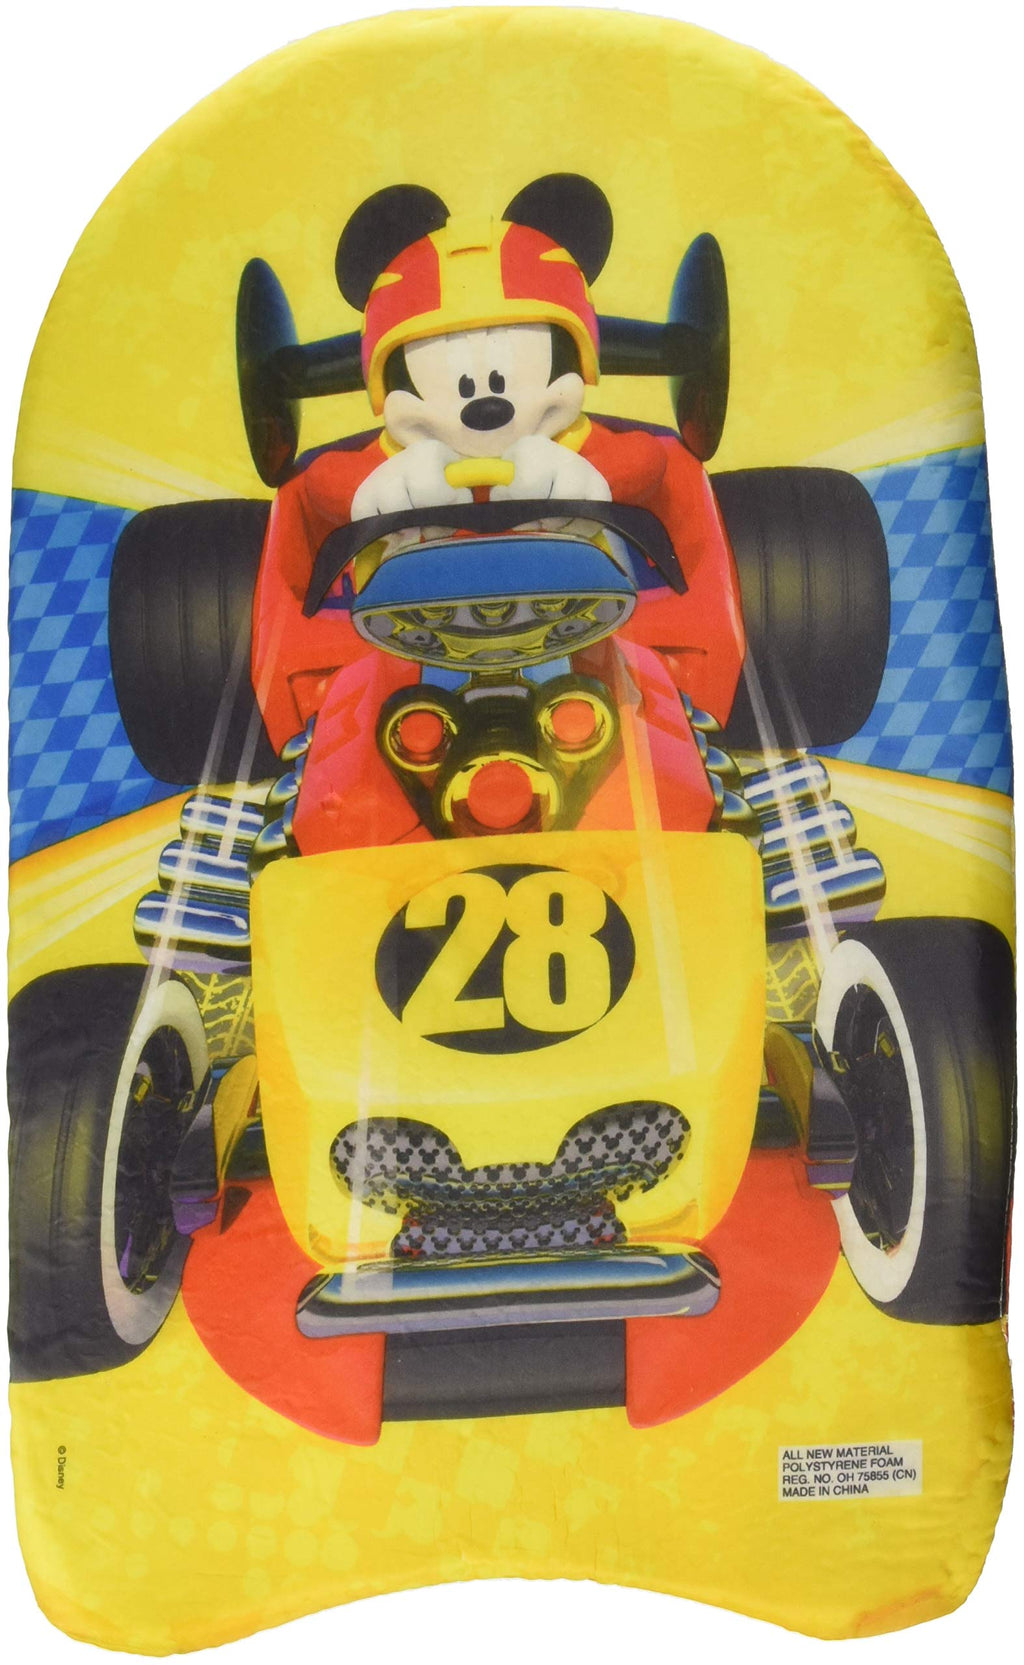 [AUSTRALIA] - UPD Mickey & The Roadster Racer Foam Kickboard, 17" x 10.5", Multicolor 